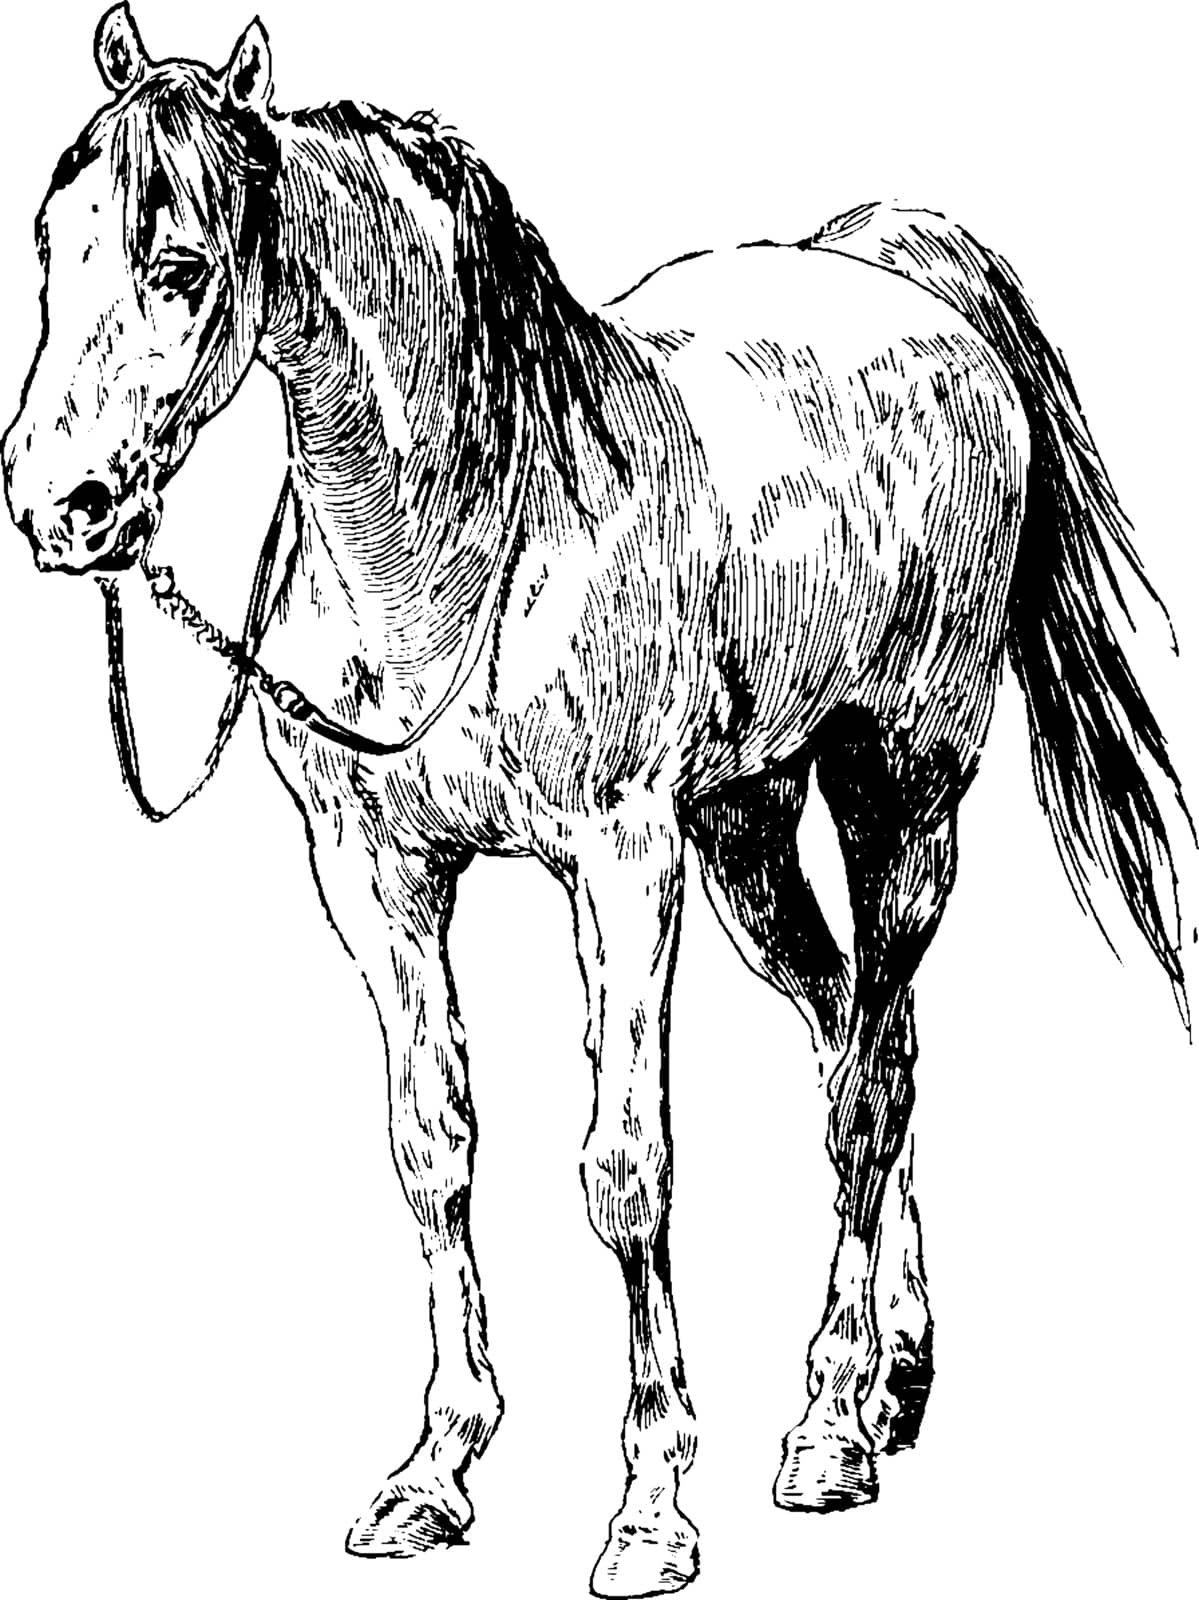 Horse, vintage illustration. by Morphart